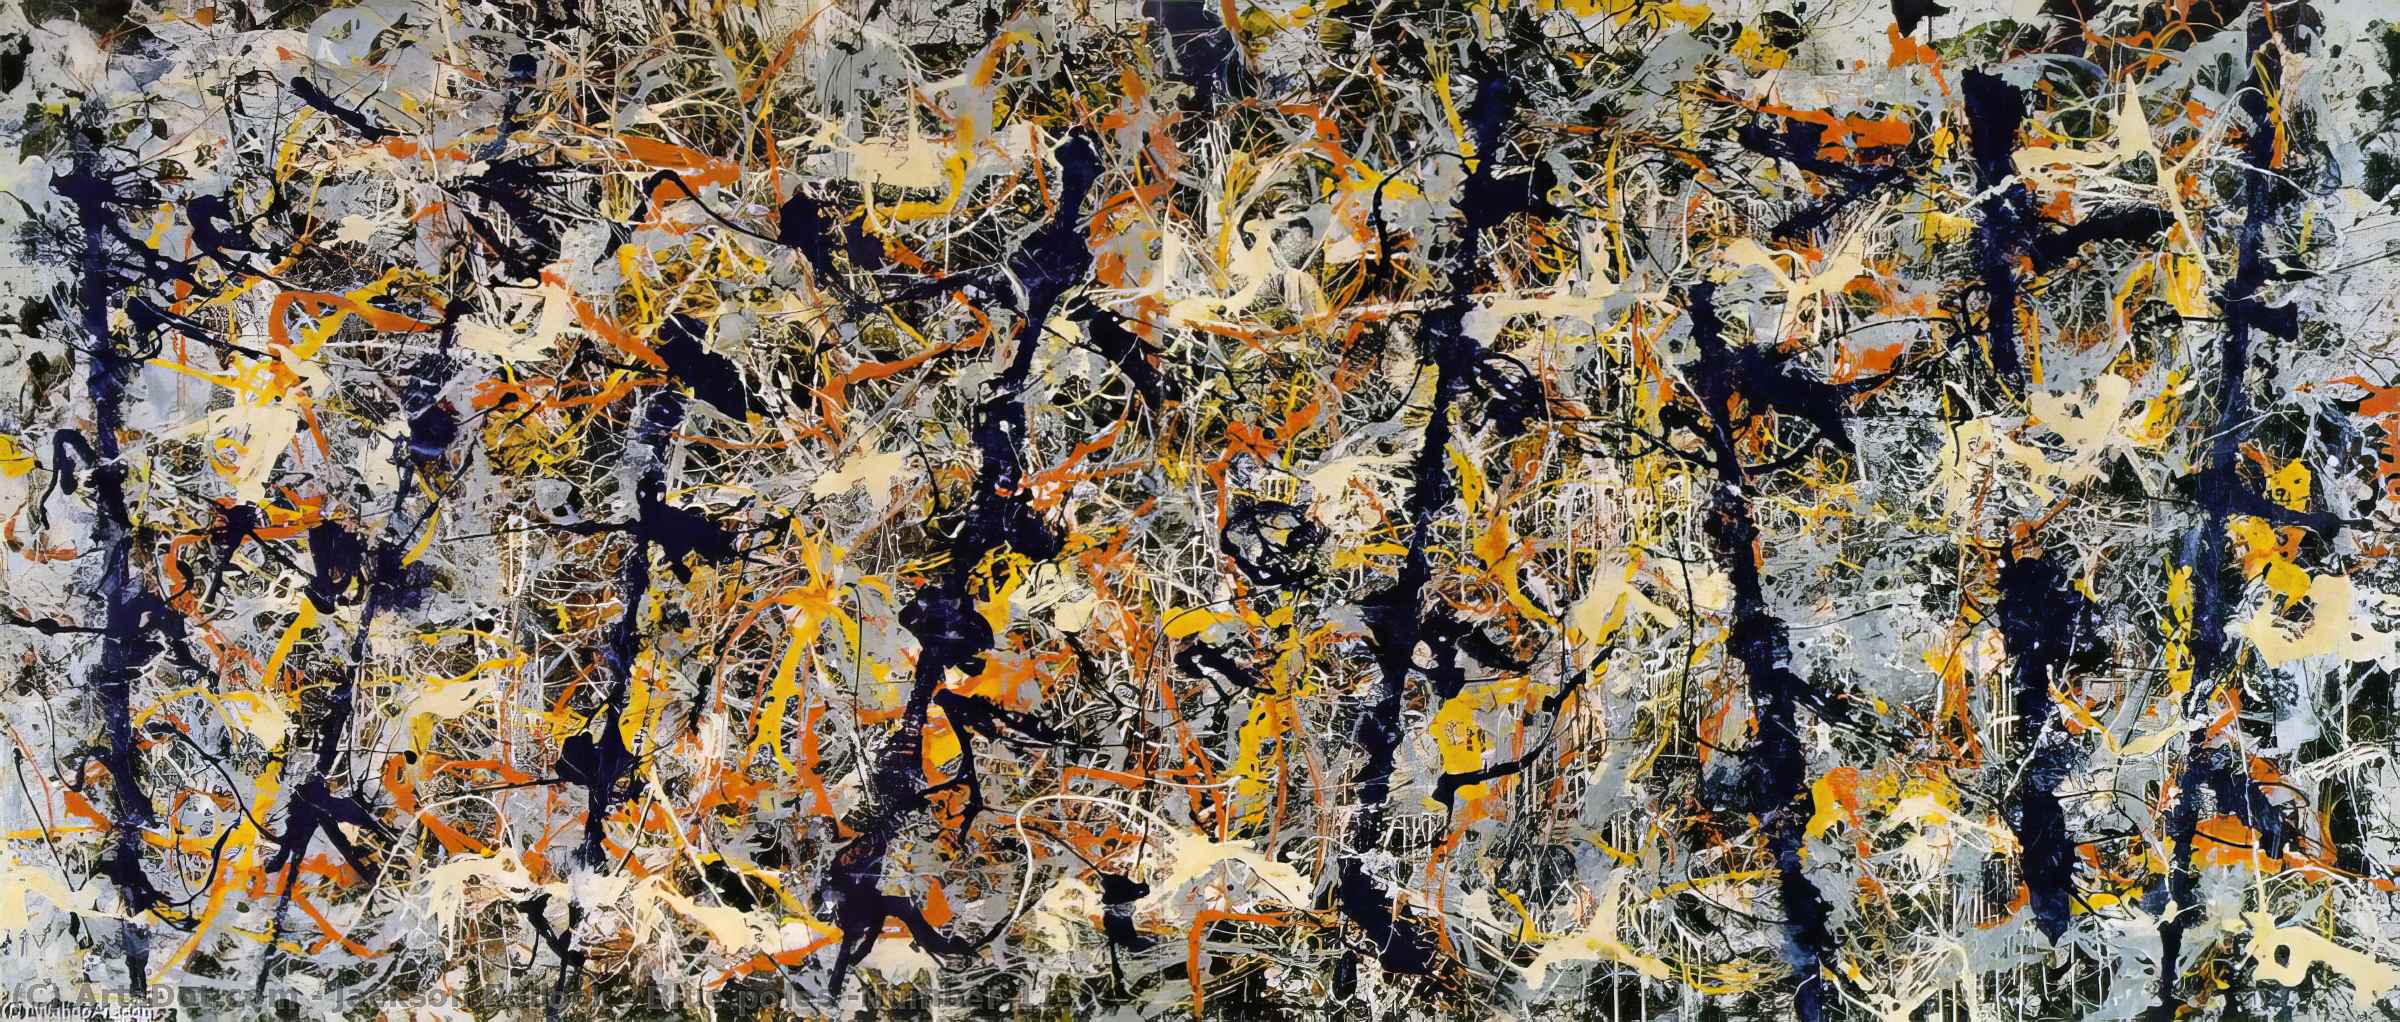 Wikoo.org - موسوعة الفنون الجميلة - اللوحة، العمل الفني Jackson Pollock - Blue poles (Number 11)